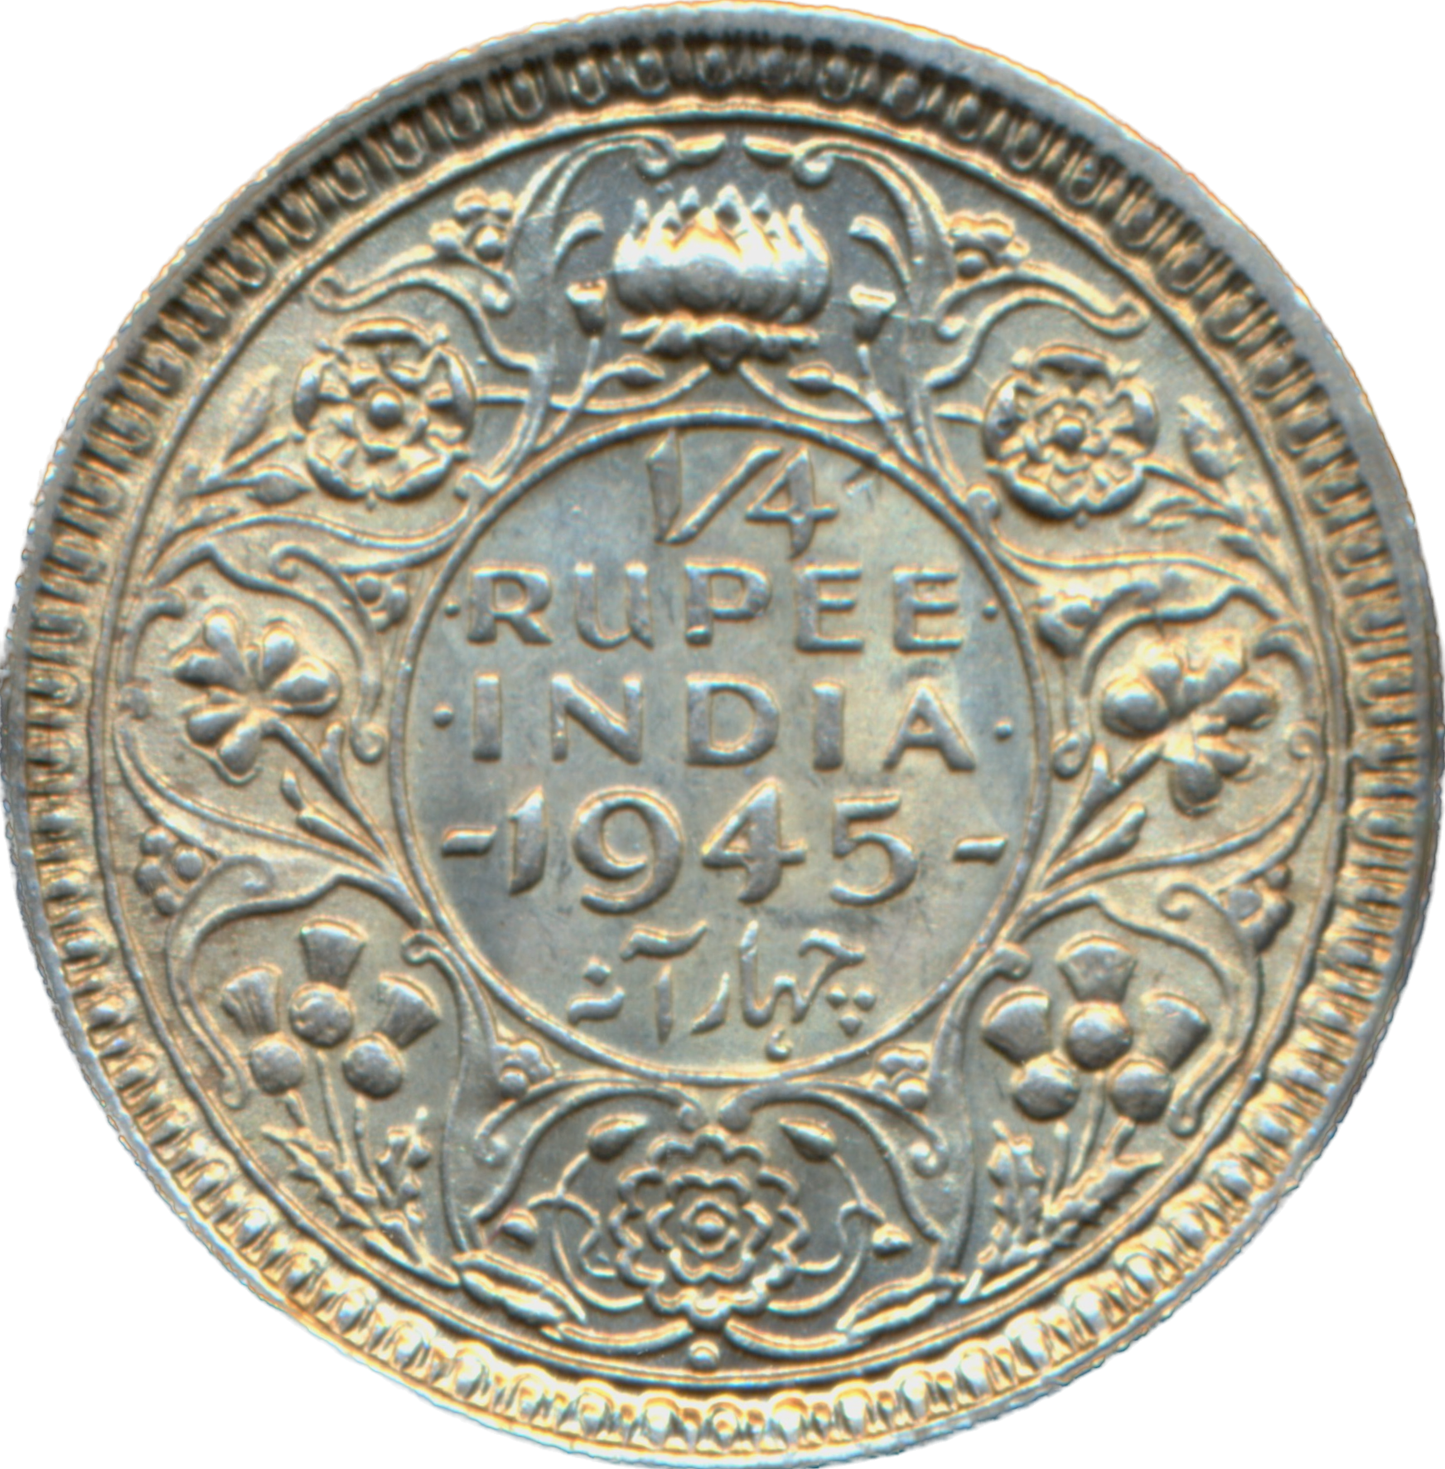 India KM547 1945 Silver 1/4 Rupee UNC